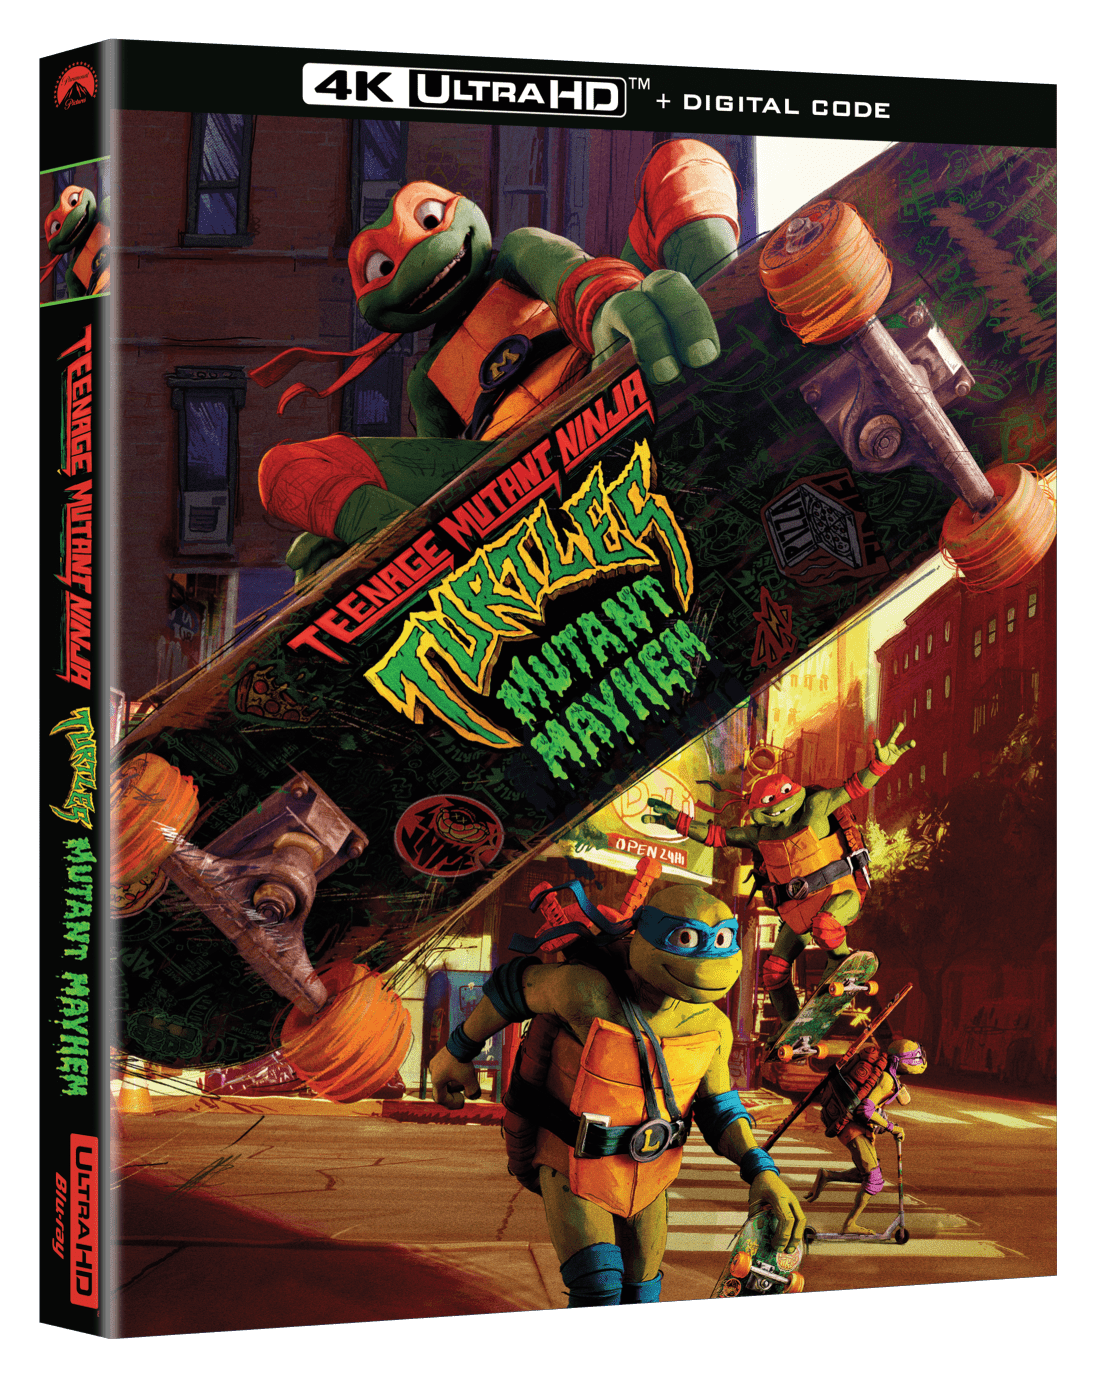 2880x1800 2023 Teenage Mutant Ninja Turtles Mutant Mayhem 4k